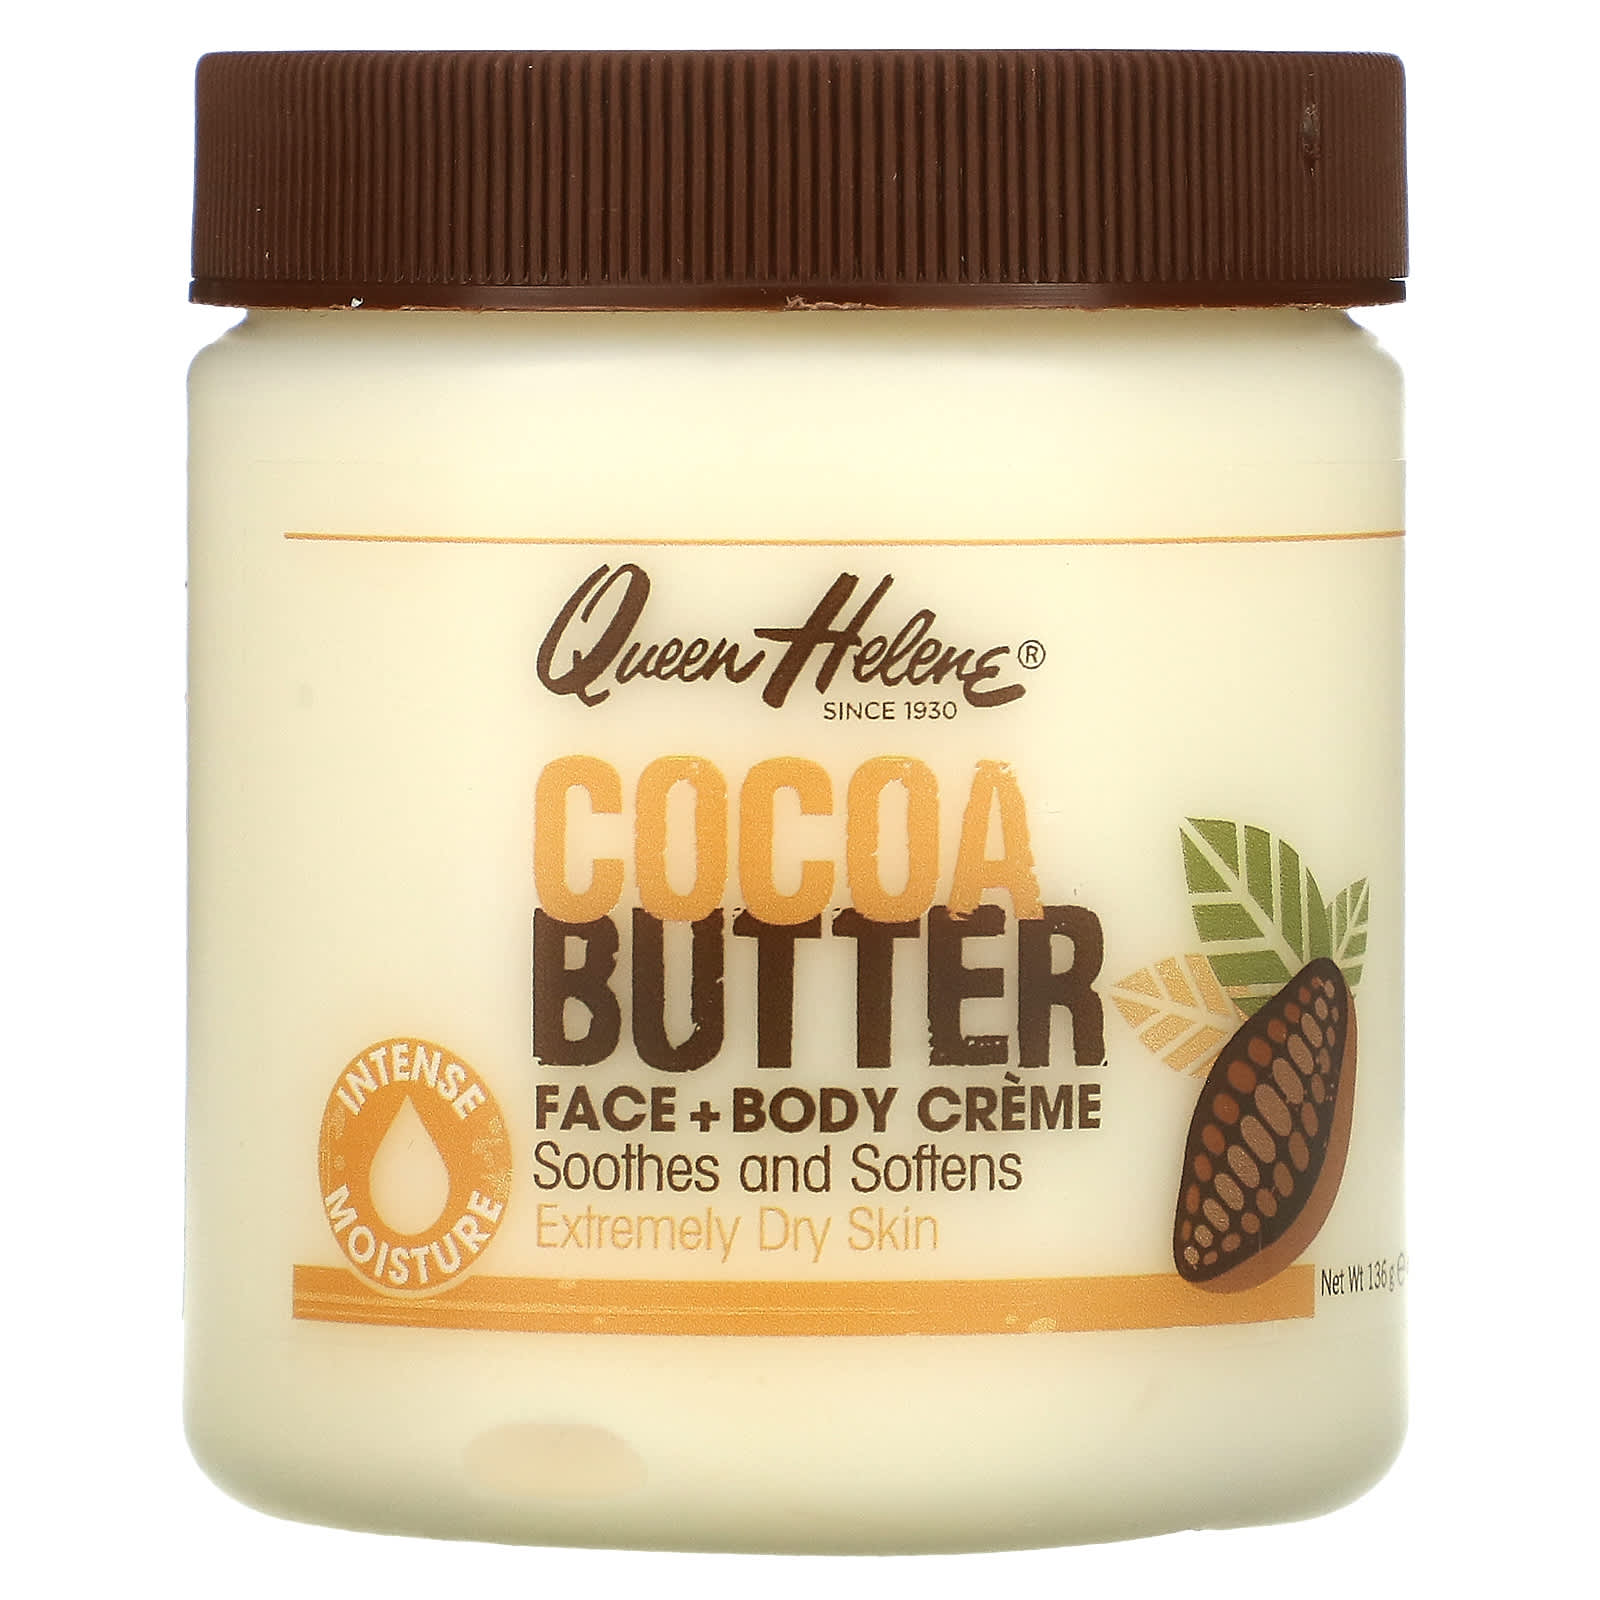 eenzaam Het beste alleen Queen Helene, Cocoa Butter Face + Body Creme, 4.8 oz (136 g)